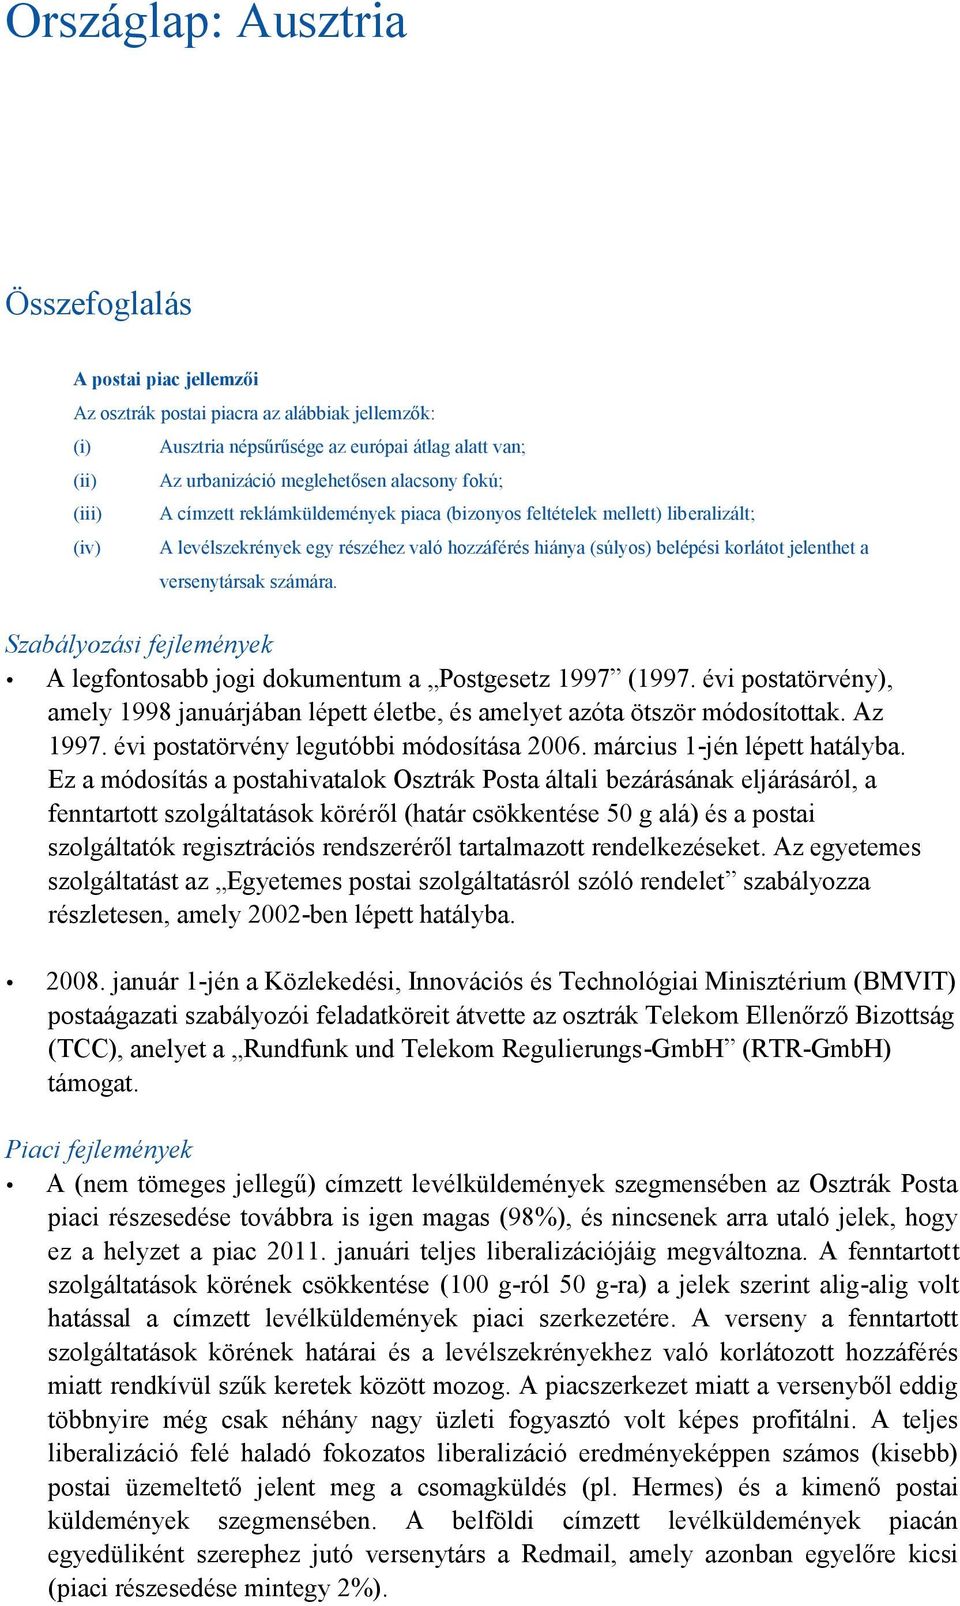 versenytársak számára. Szabályozási fejlemények A legfontosabb jogi dokumentum a Postgesetz 1997 (1997. évi postatörvény), amely 1998 januárjában lépett életbe, és amelyet azóta ötször módosítottak.